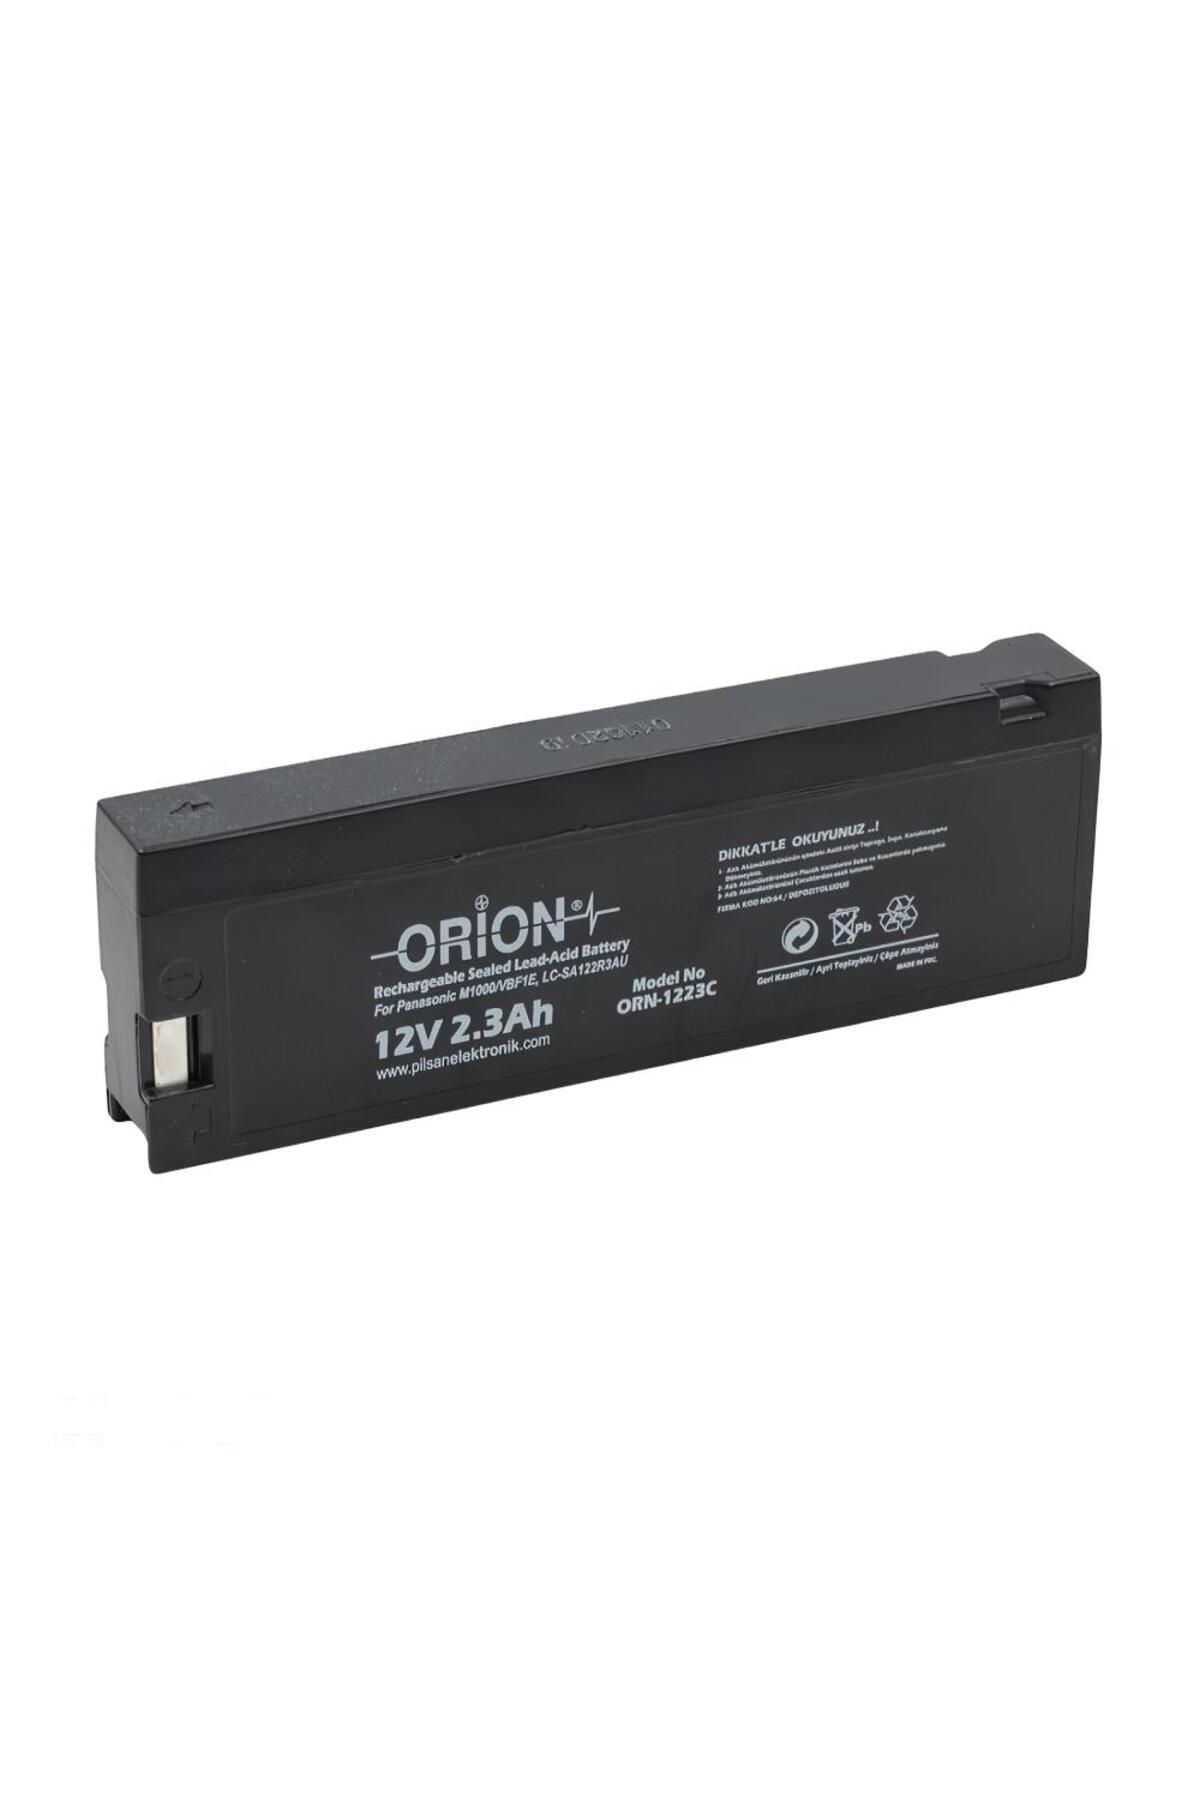 Orion Orn1223ca 12v 2.3ah M1000/vbf1e Lead Acid Bataryası